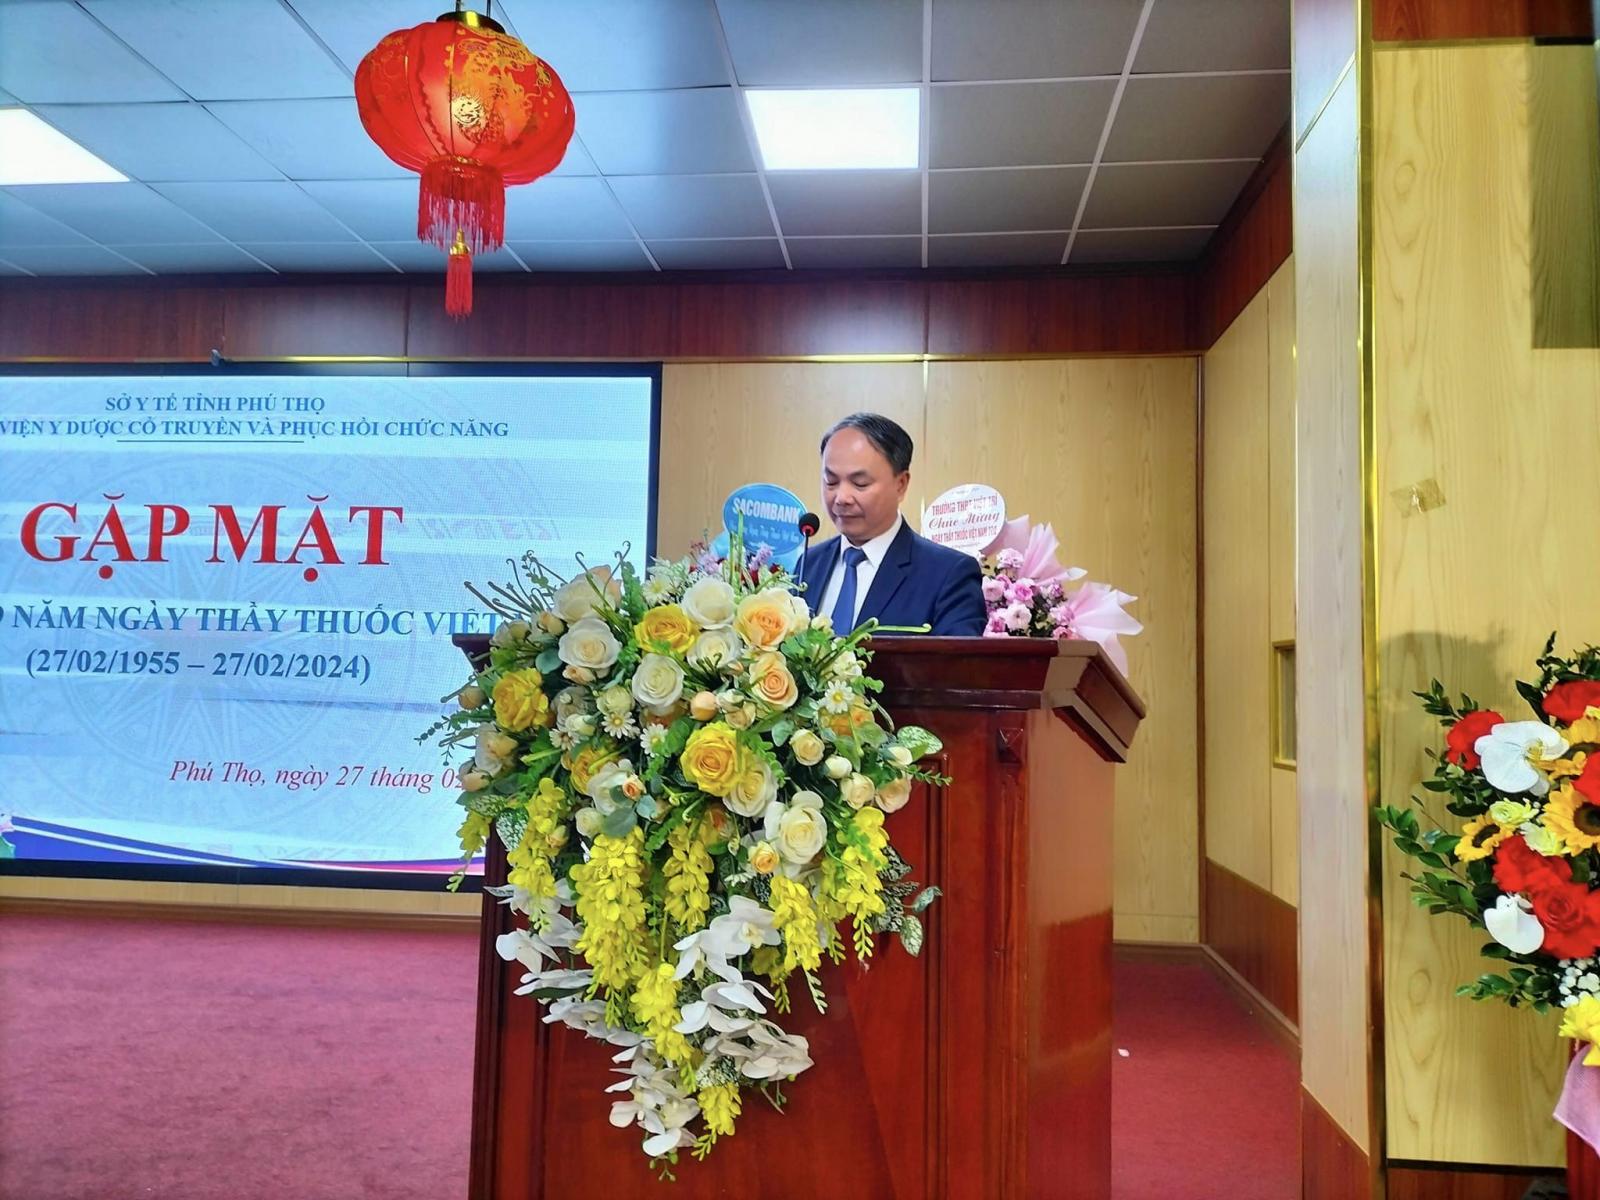 Chương trình Gặp mặt Kỷ niệm 69 năm ngày Thầy thuốc Việt Nam và trao thưởng cho các tập thể, cá nhân đạt thành tích xuất sắc năm 2023